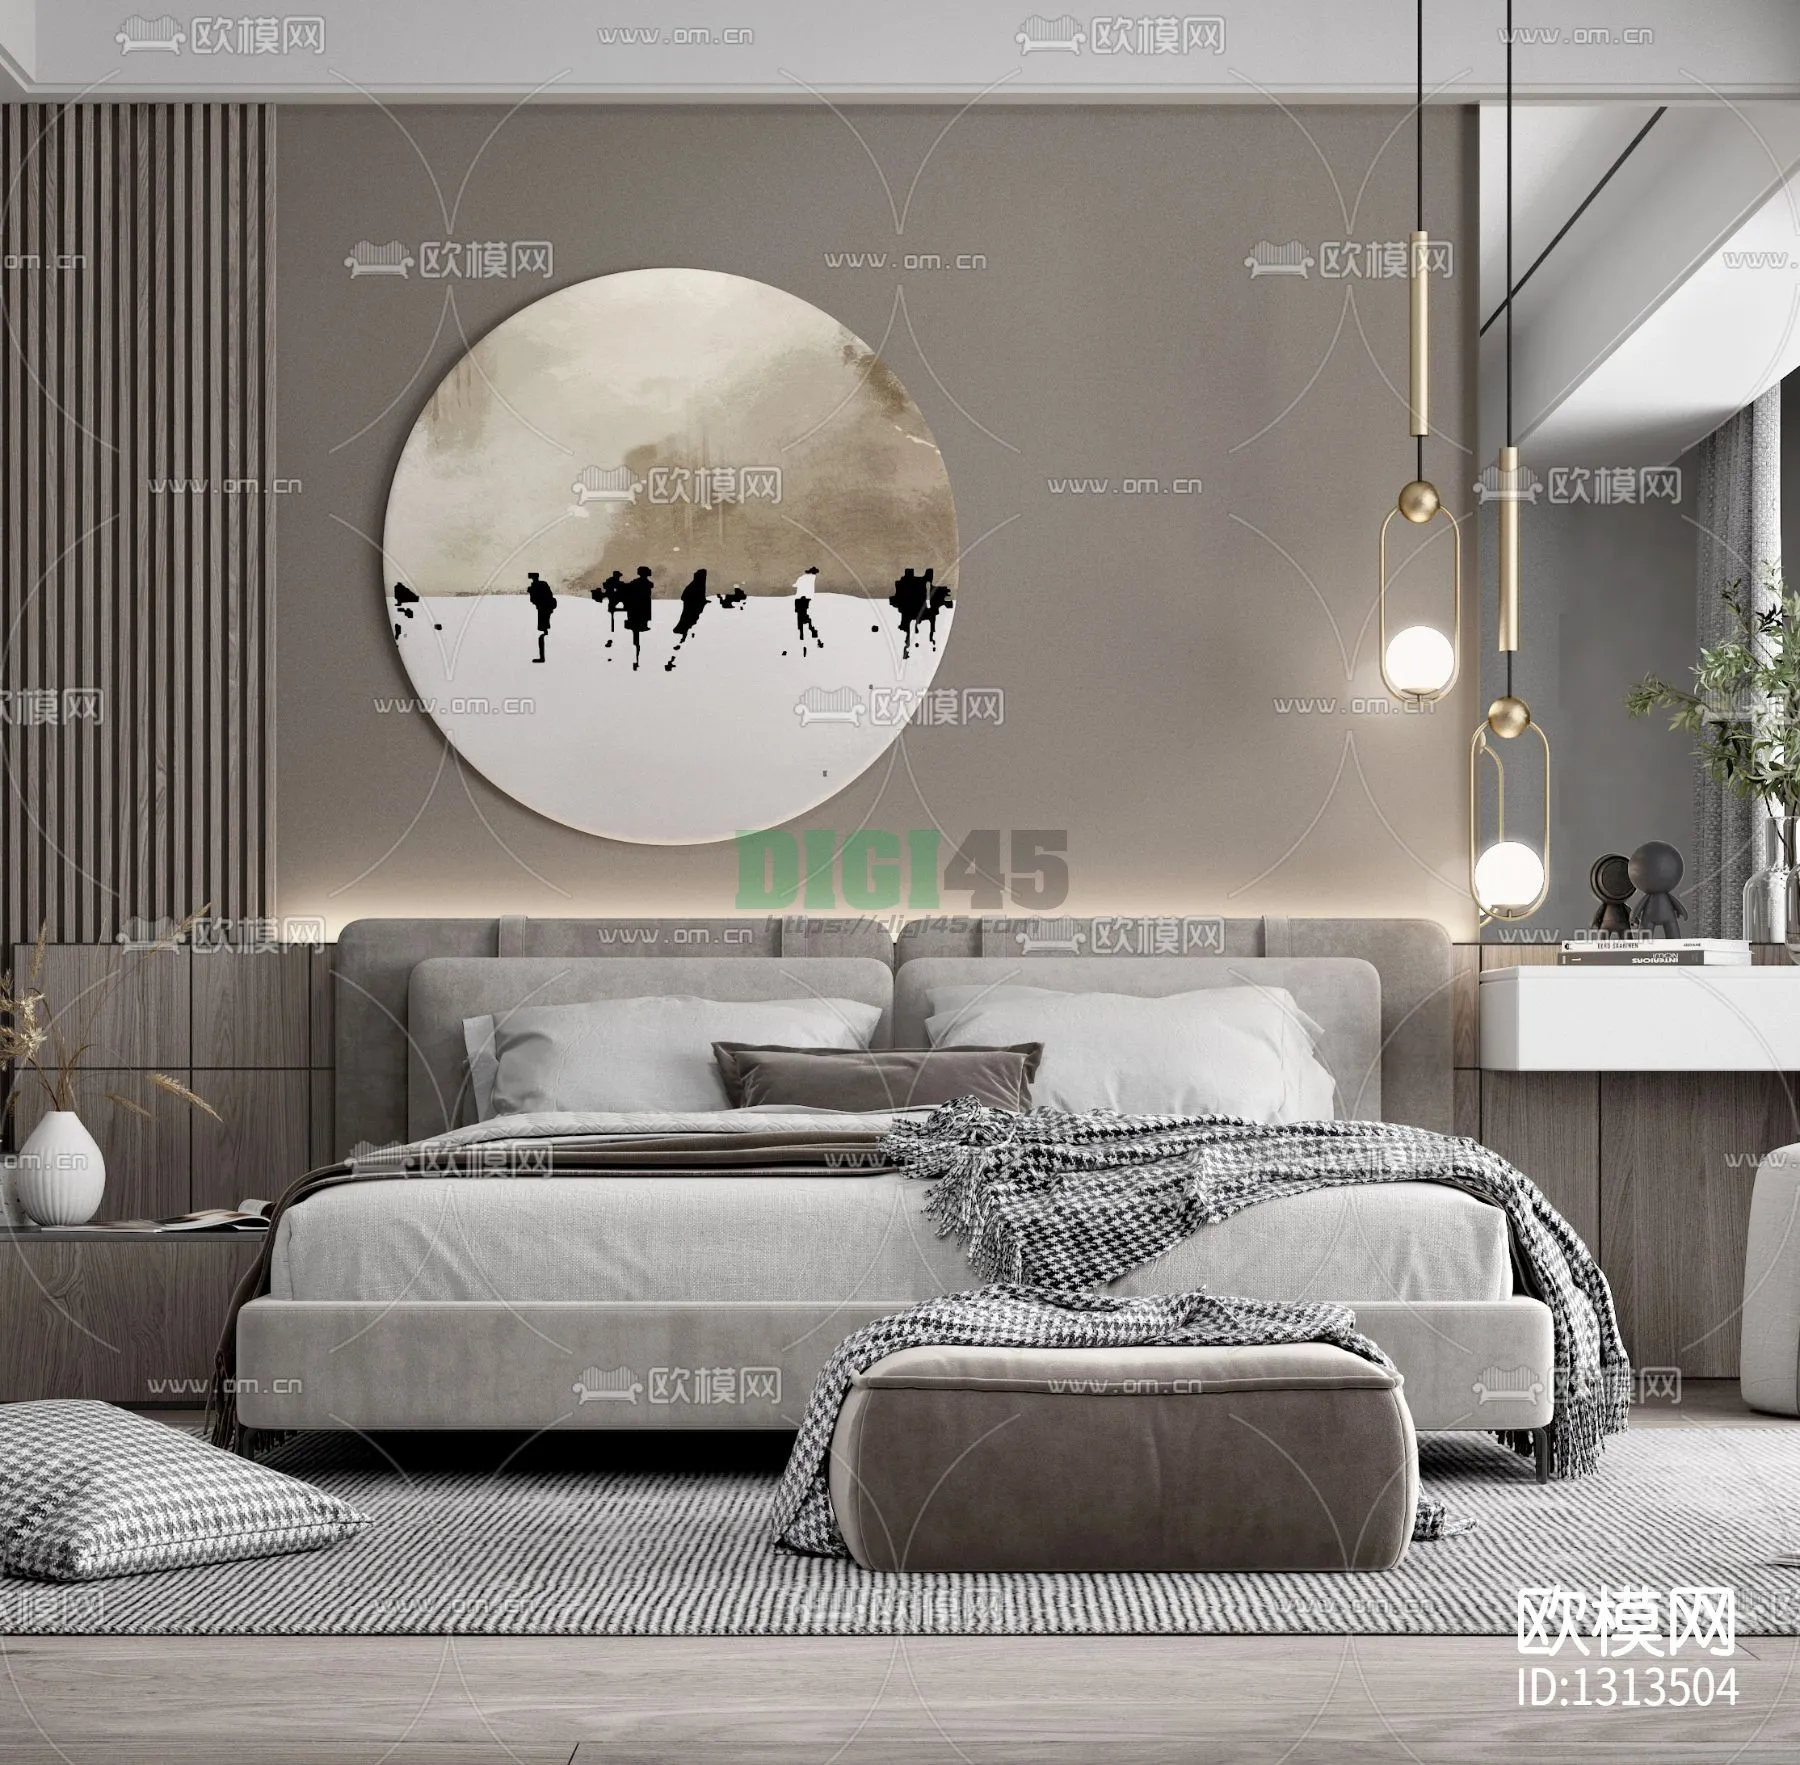 Bedroom 3D Scenes – 1146